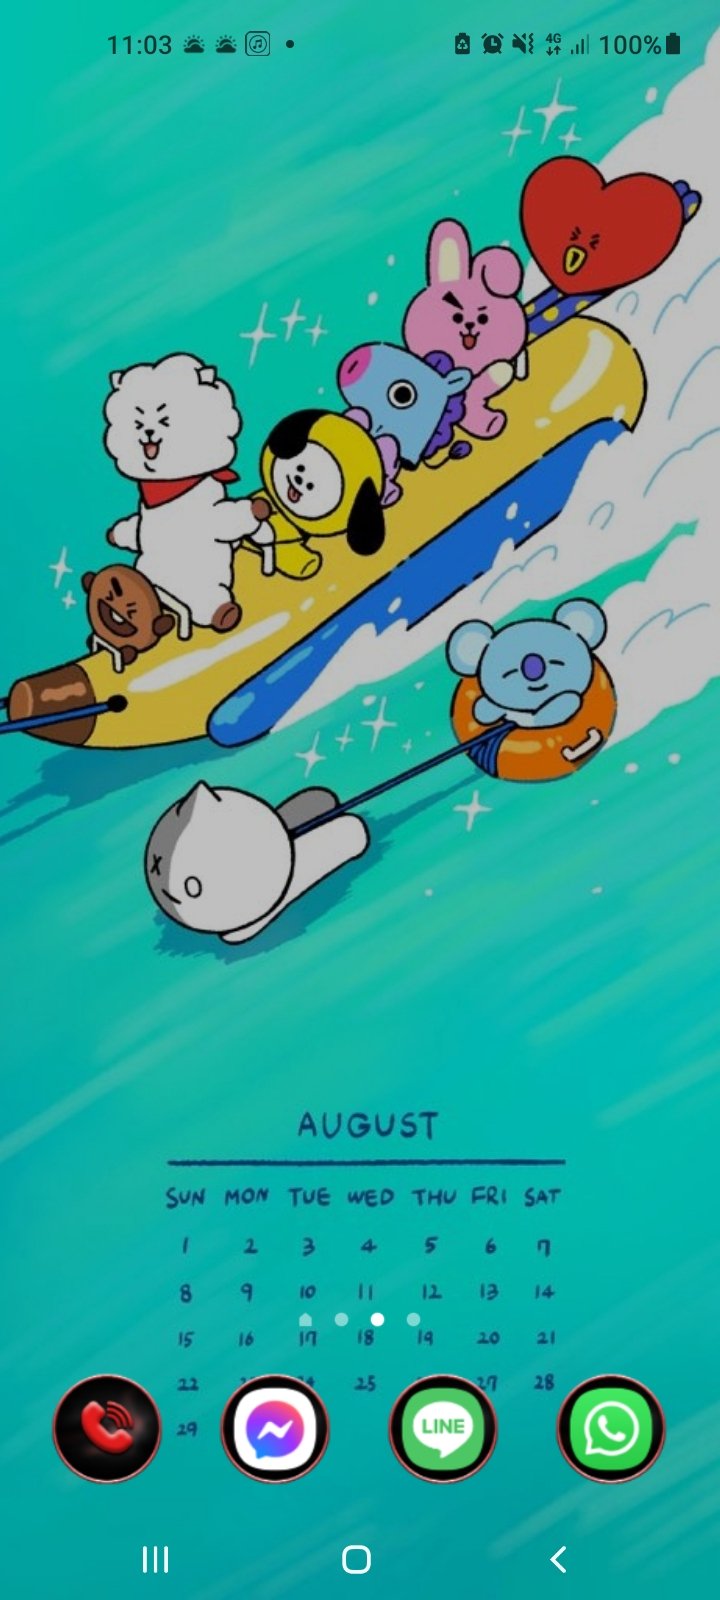 Bt21 Japan Official 8月もユニスターズ のみんなとともに 8月のカレンダーにスマホの壁紙も変えたよ 今年の夏も一緒に楽しもう 8月 壁紙 Cooky Bt21 T Co 0xwele6alc Twitter